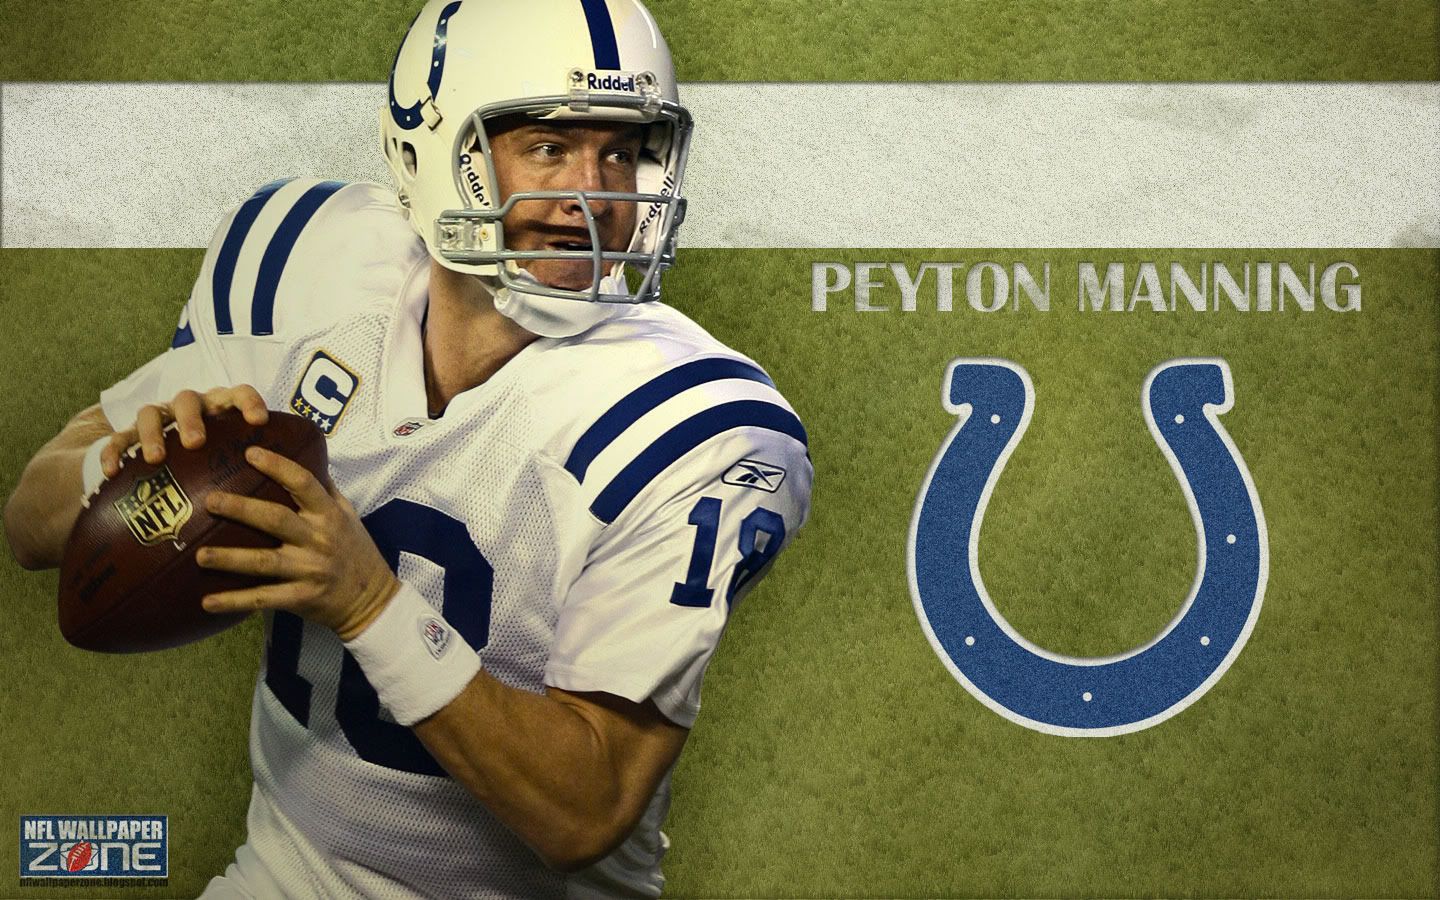 PeytonManningWallpaper-1440.jpg Peyton Manning Wallpaper